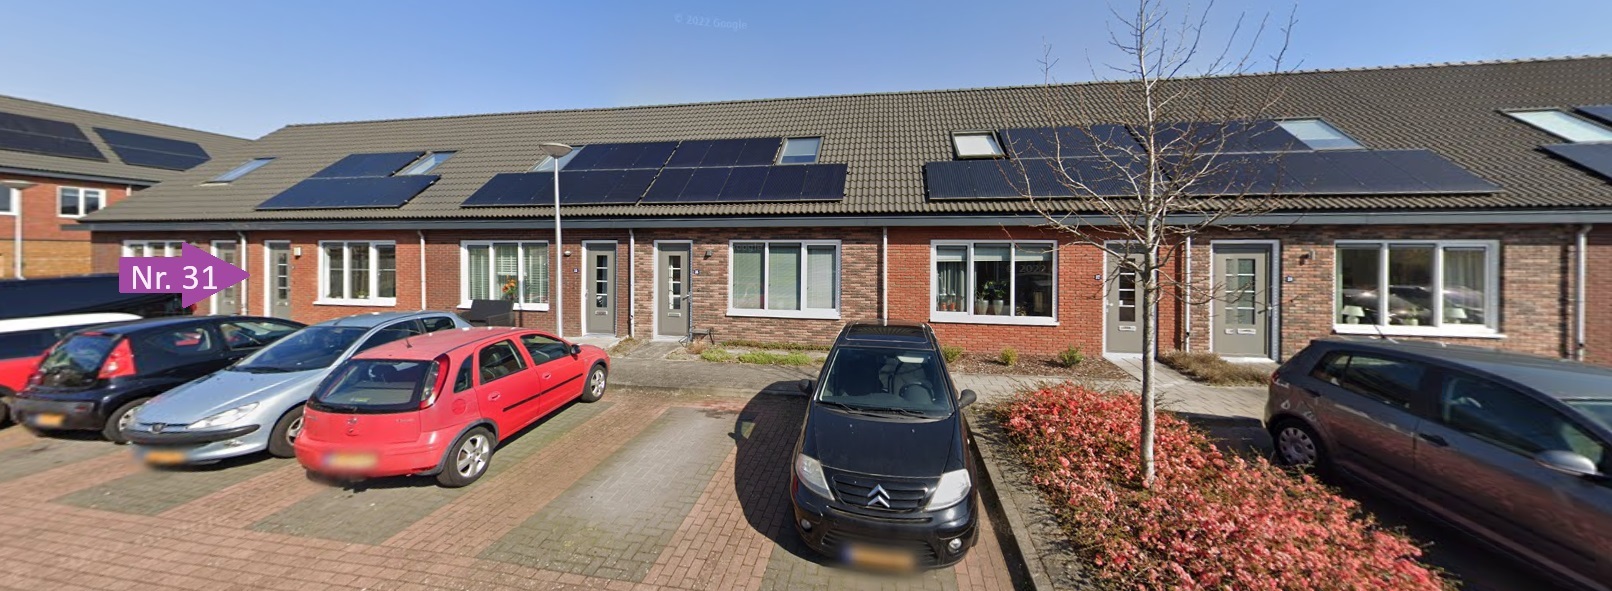 Hunze 31, 7908 DZ Hoogeveen, Nederland